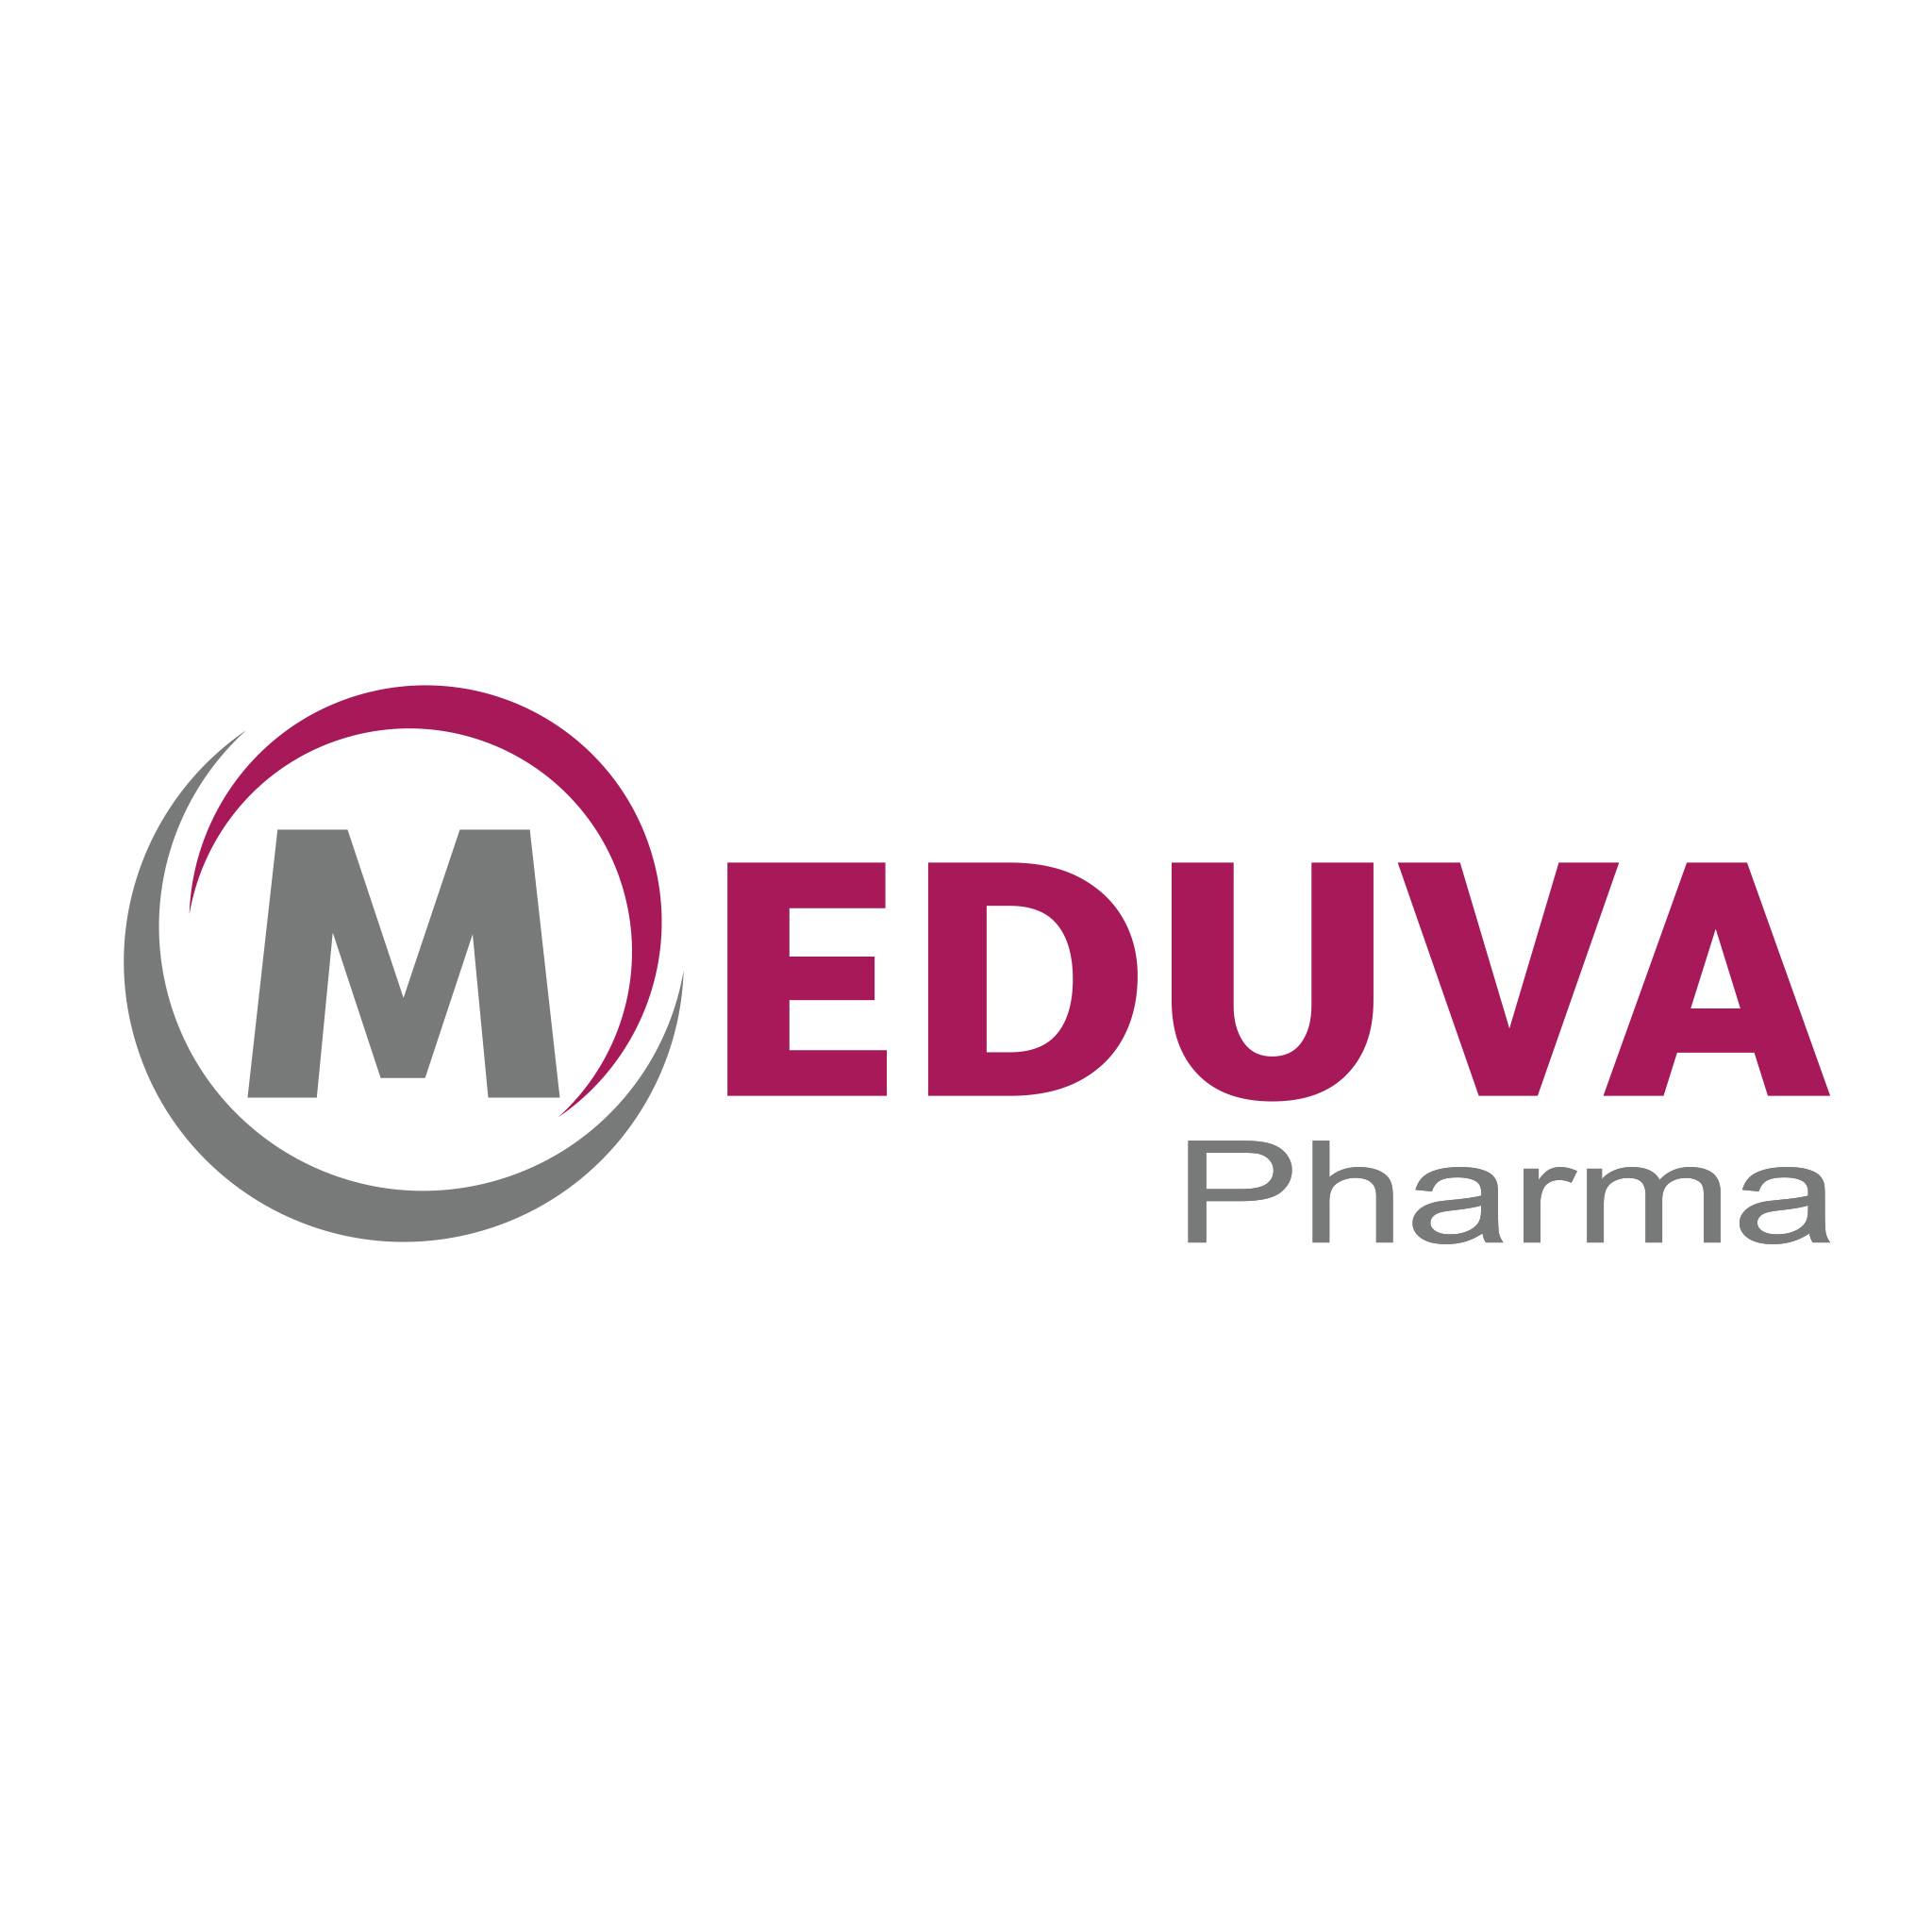 Meduva pharma